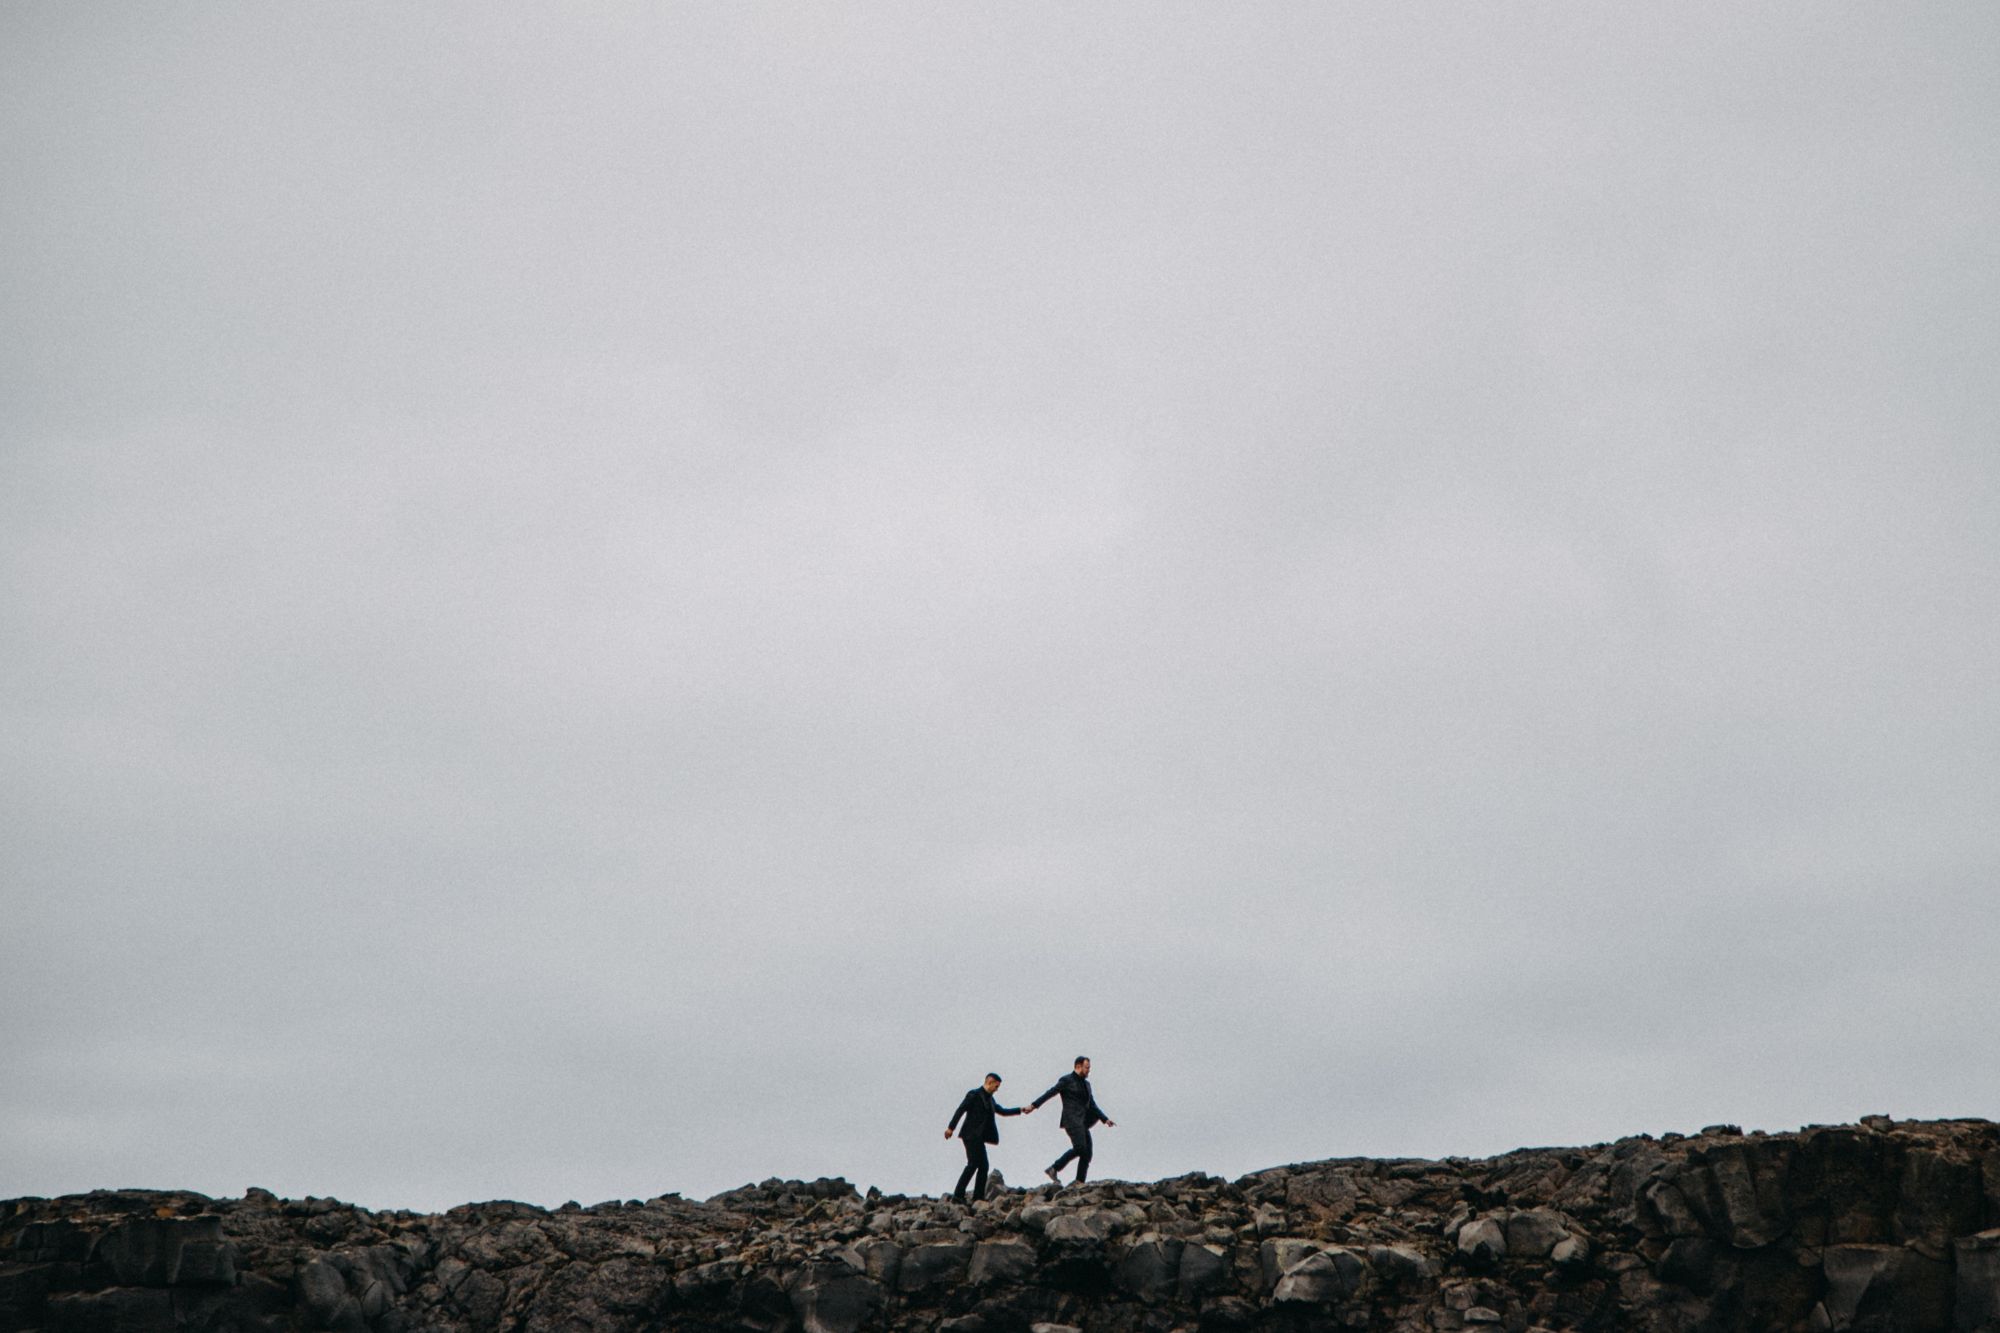 Newlywed grooms walking across rocky Iceland landscape.